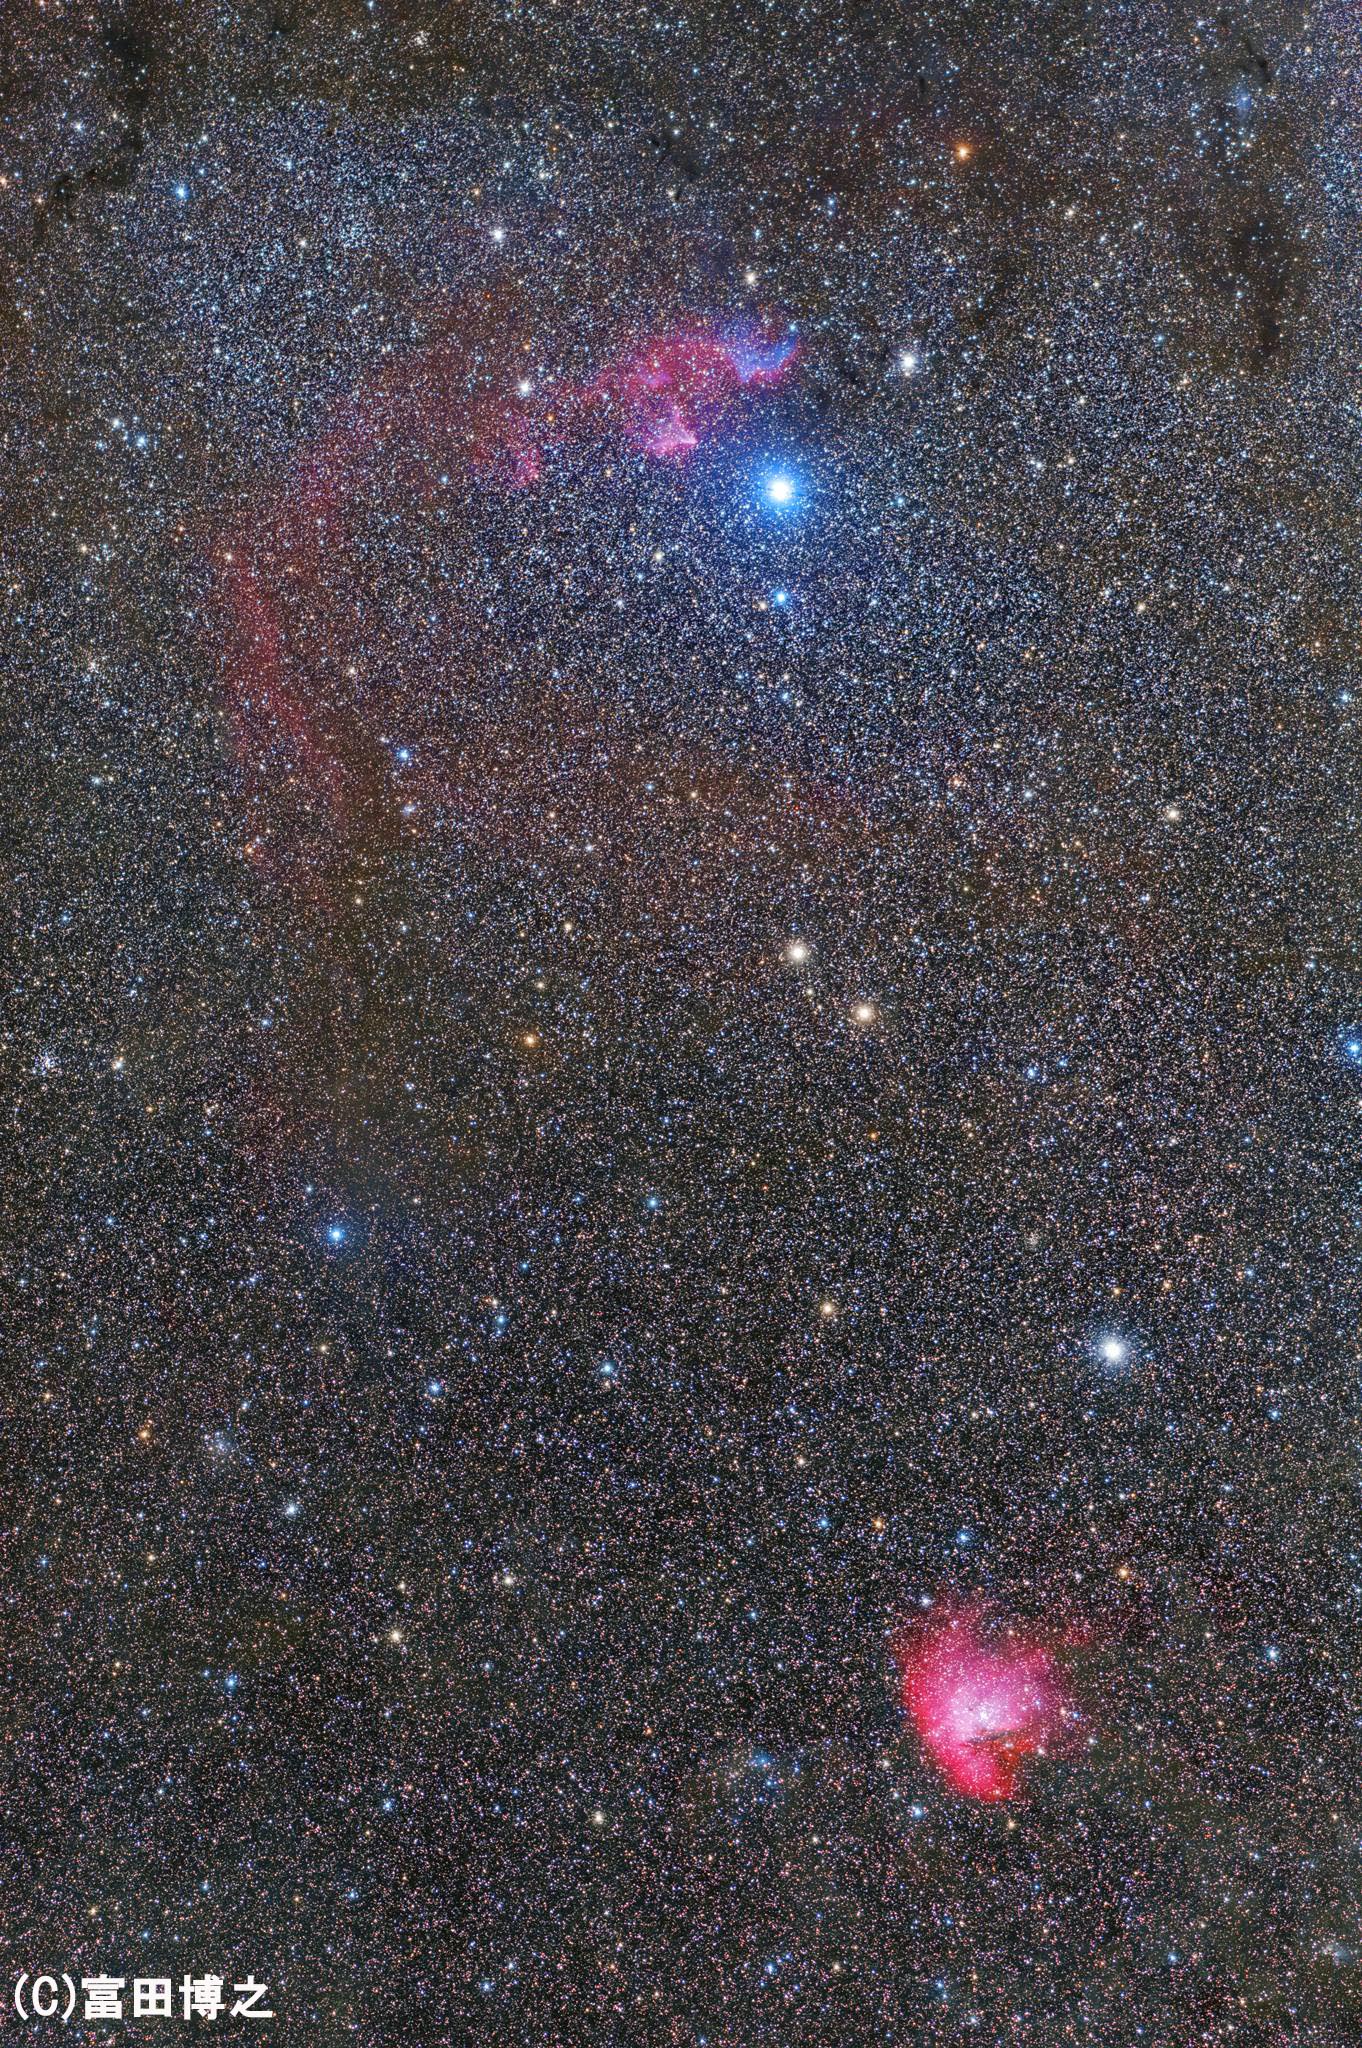 カシオペヤ座中心部 G星ツィーの輝きと色とりどりの星雲 天リフギャラリー